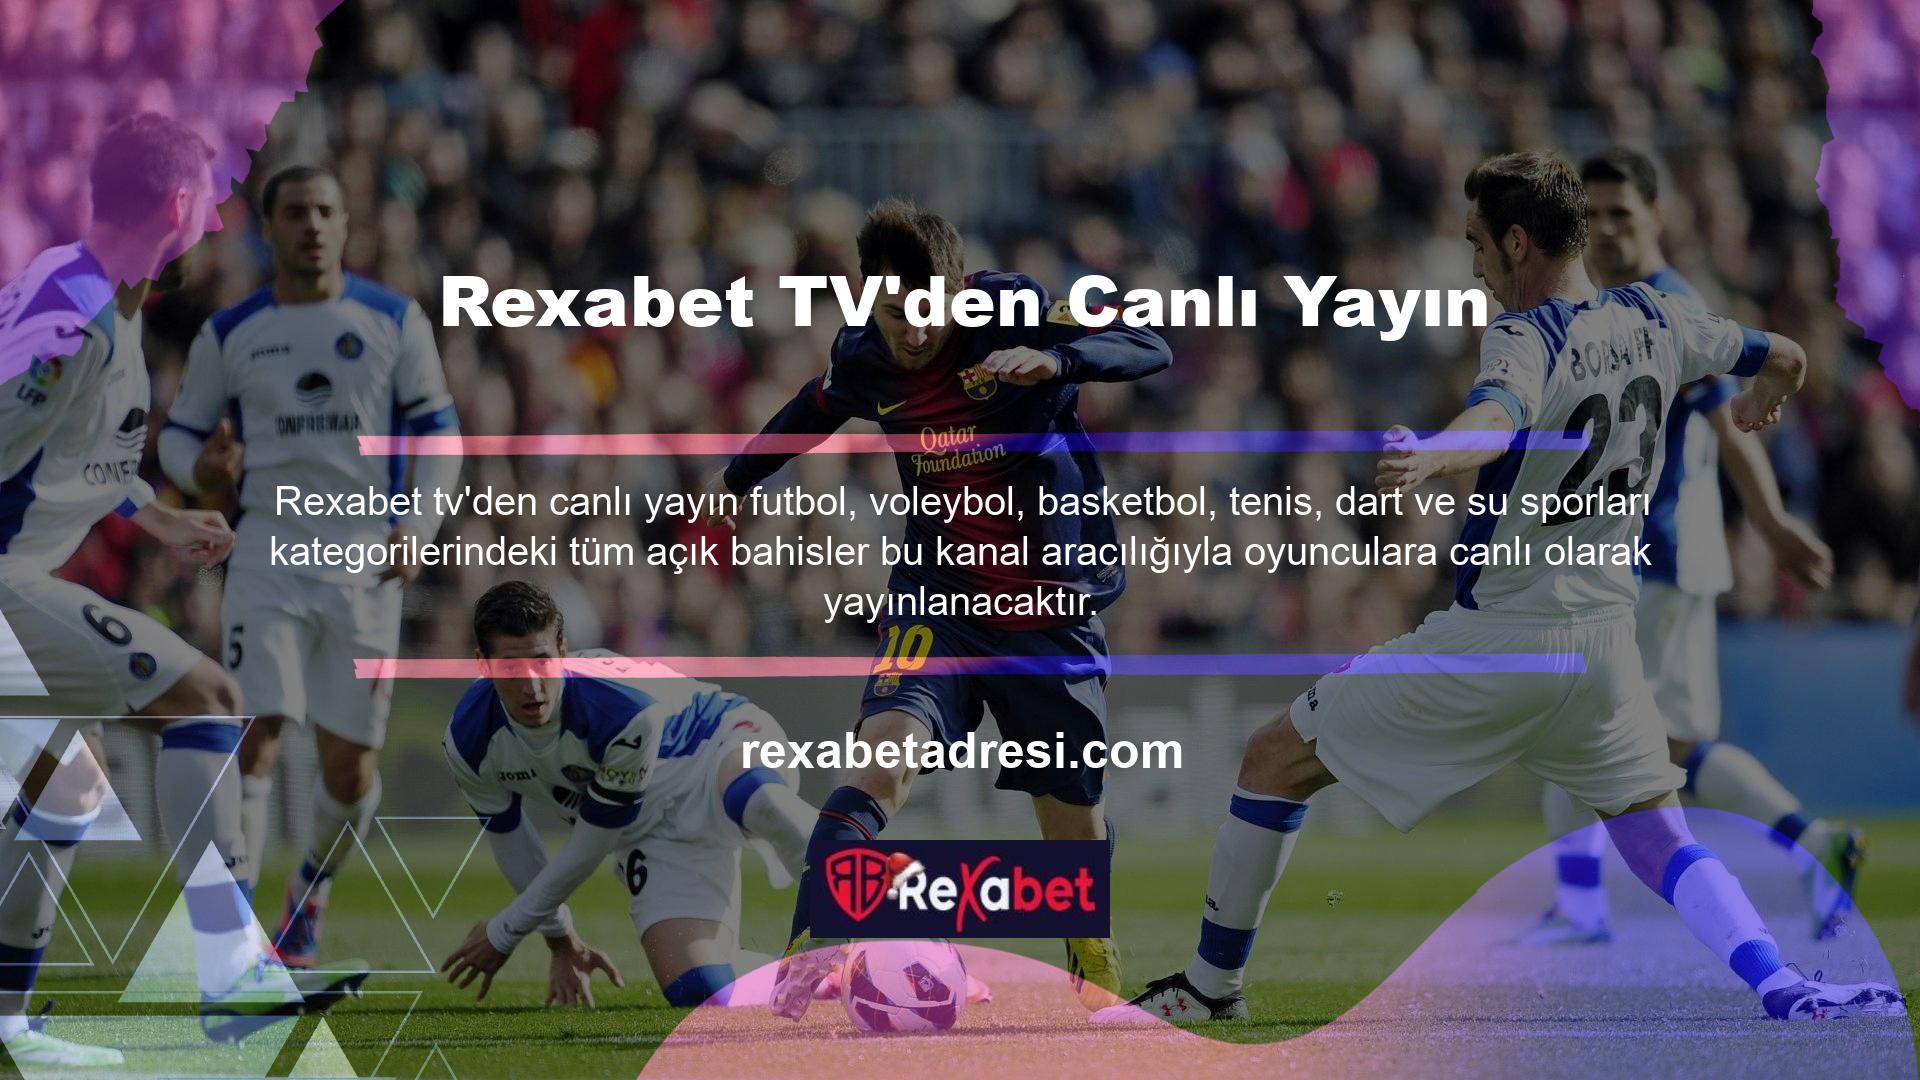 Bahis şirketlerinde bu tür fırsatlardan yararlanmak isteyen oyuncular Rexabet TV canlı yayınlarını tercih edeceklerdir